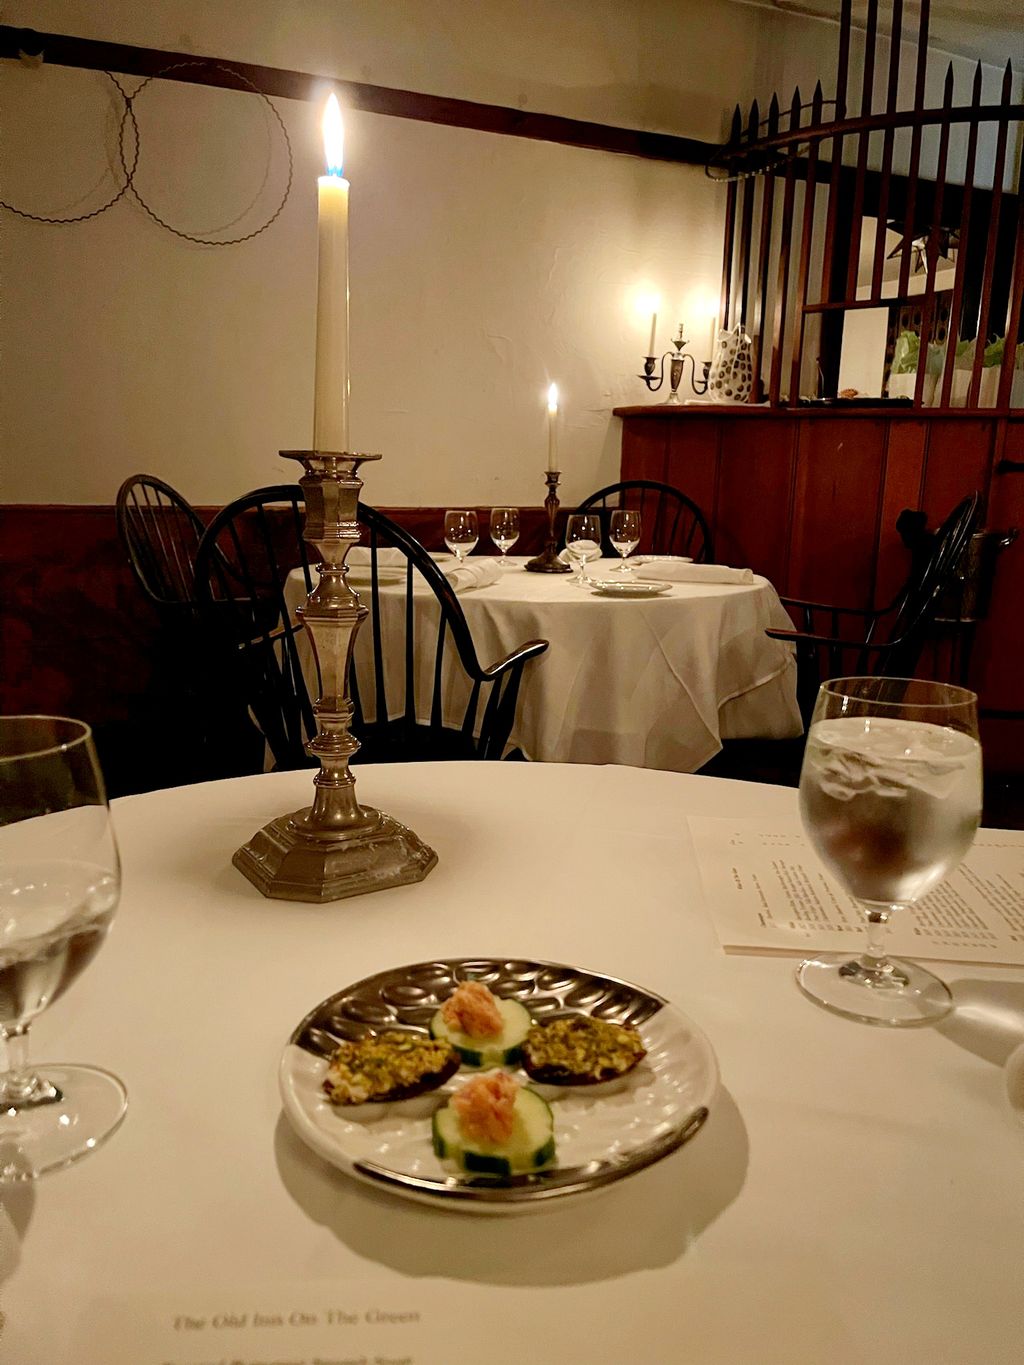 The-Old-Inn-On-The-Green-Restaurant